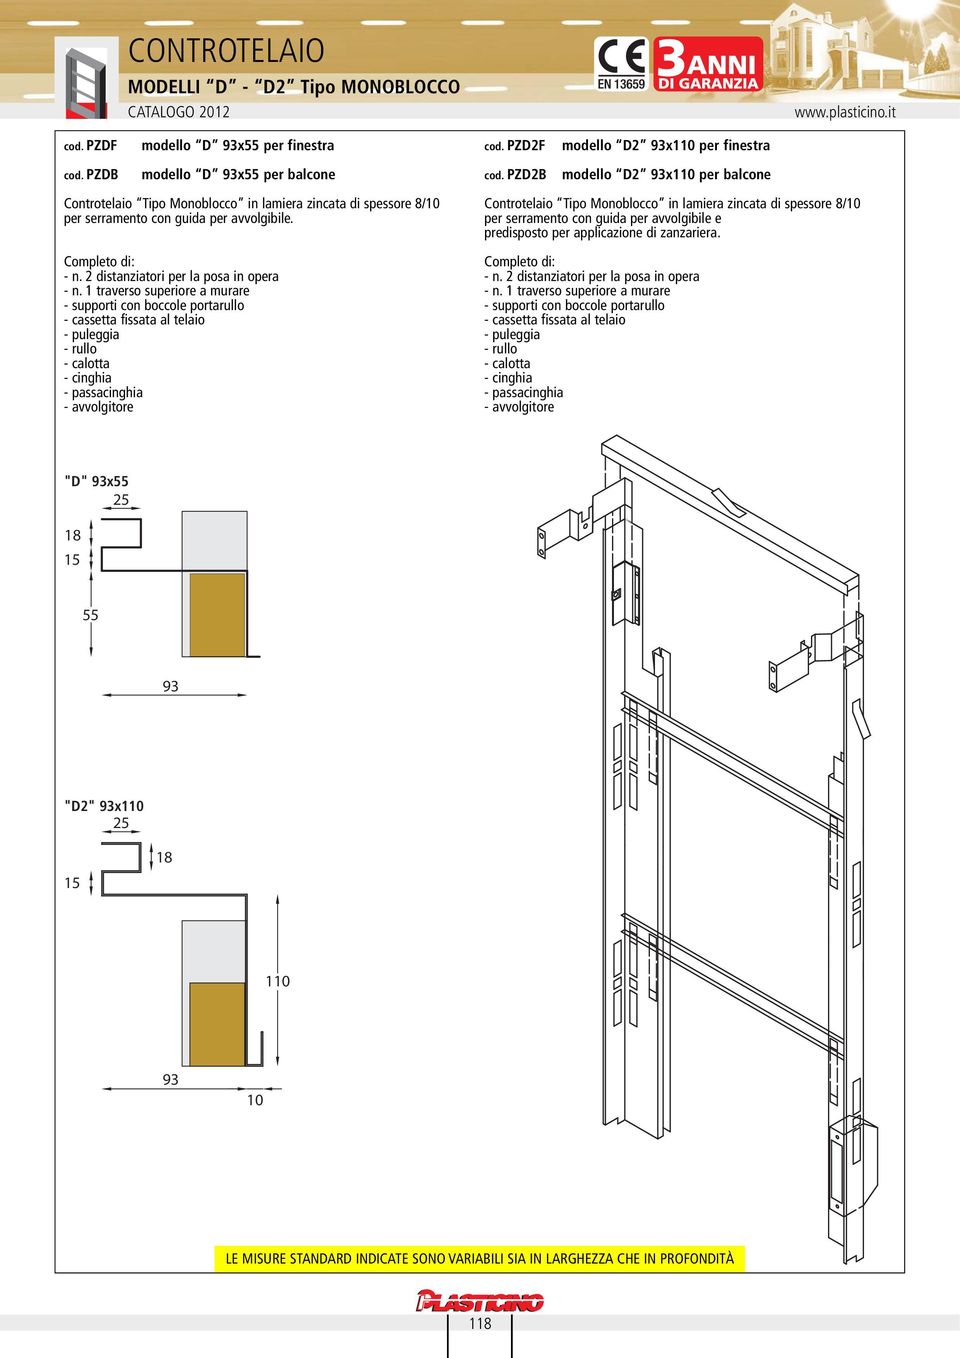 PZD2B modello D2 93x1 per balcone Controtelaio Tipo Monoblocco in lamiera zincata di spessore 8/ per serramento con guida per avvolgibile. - n.